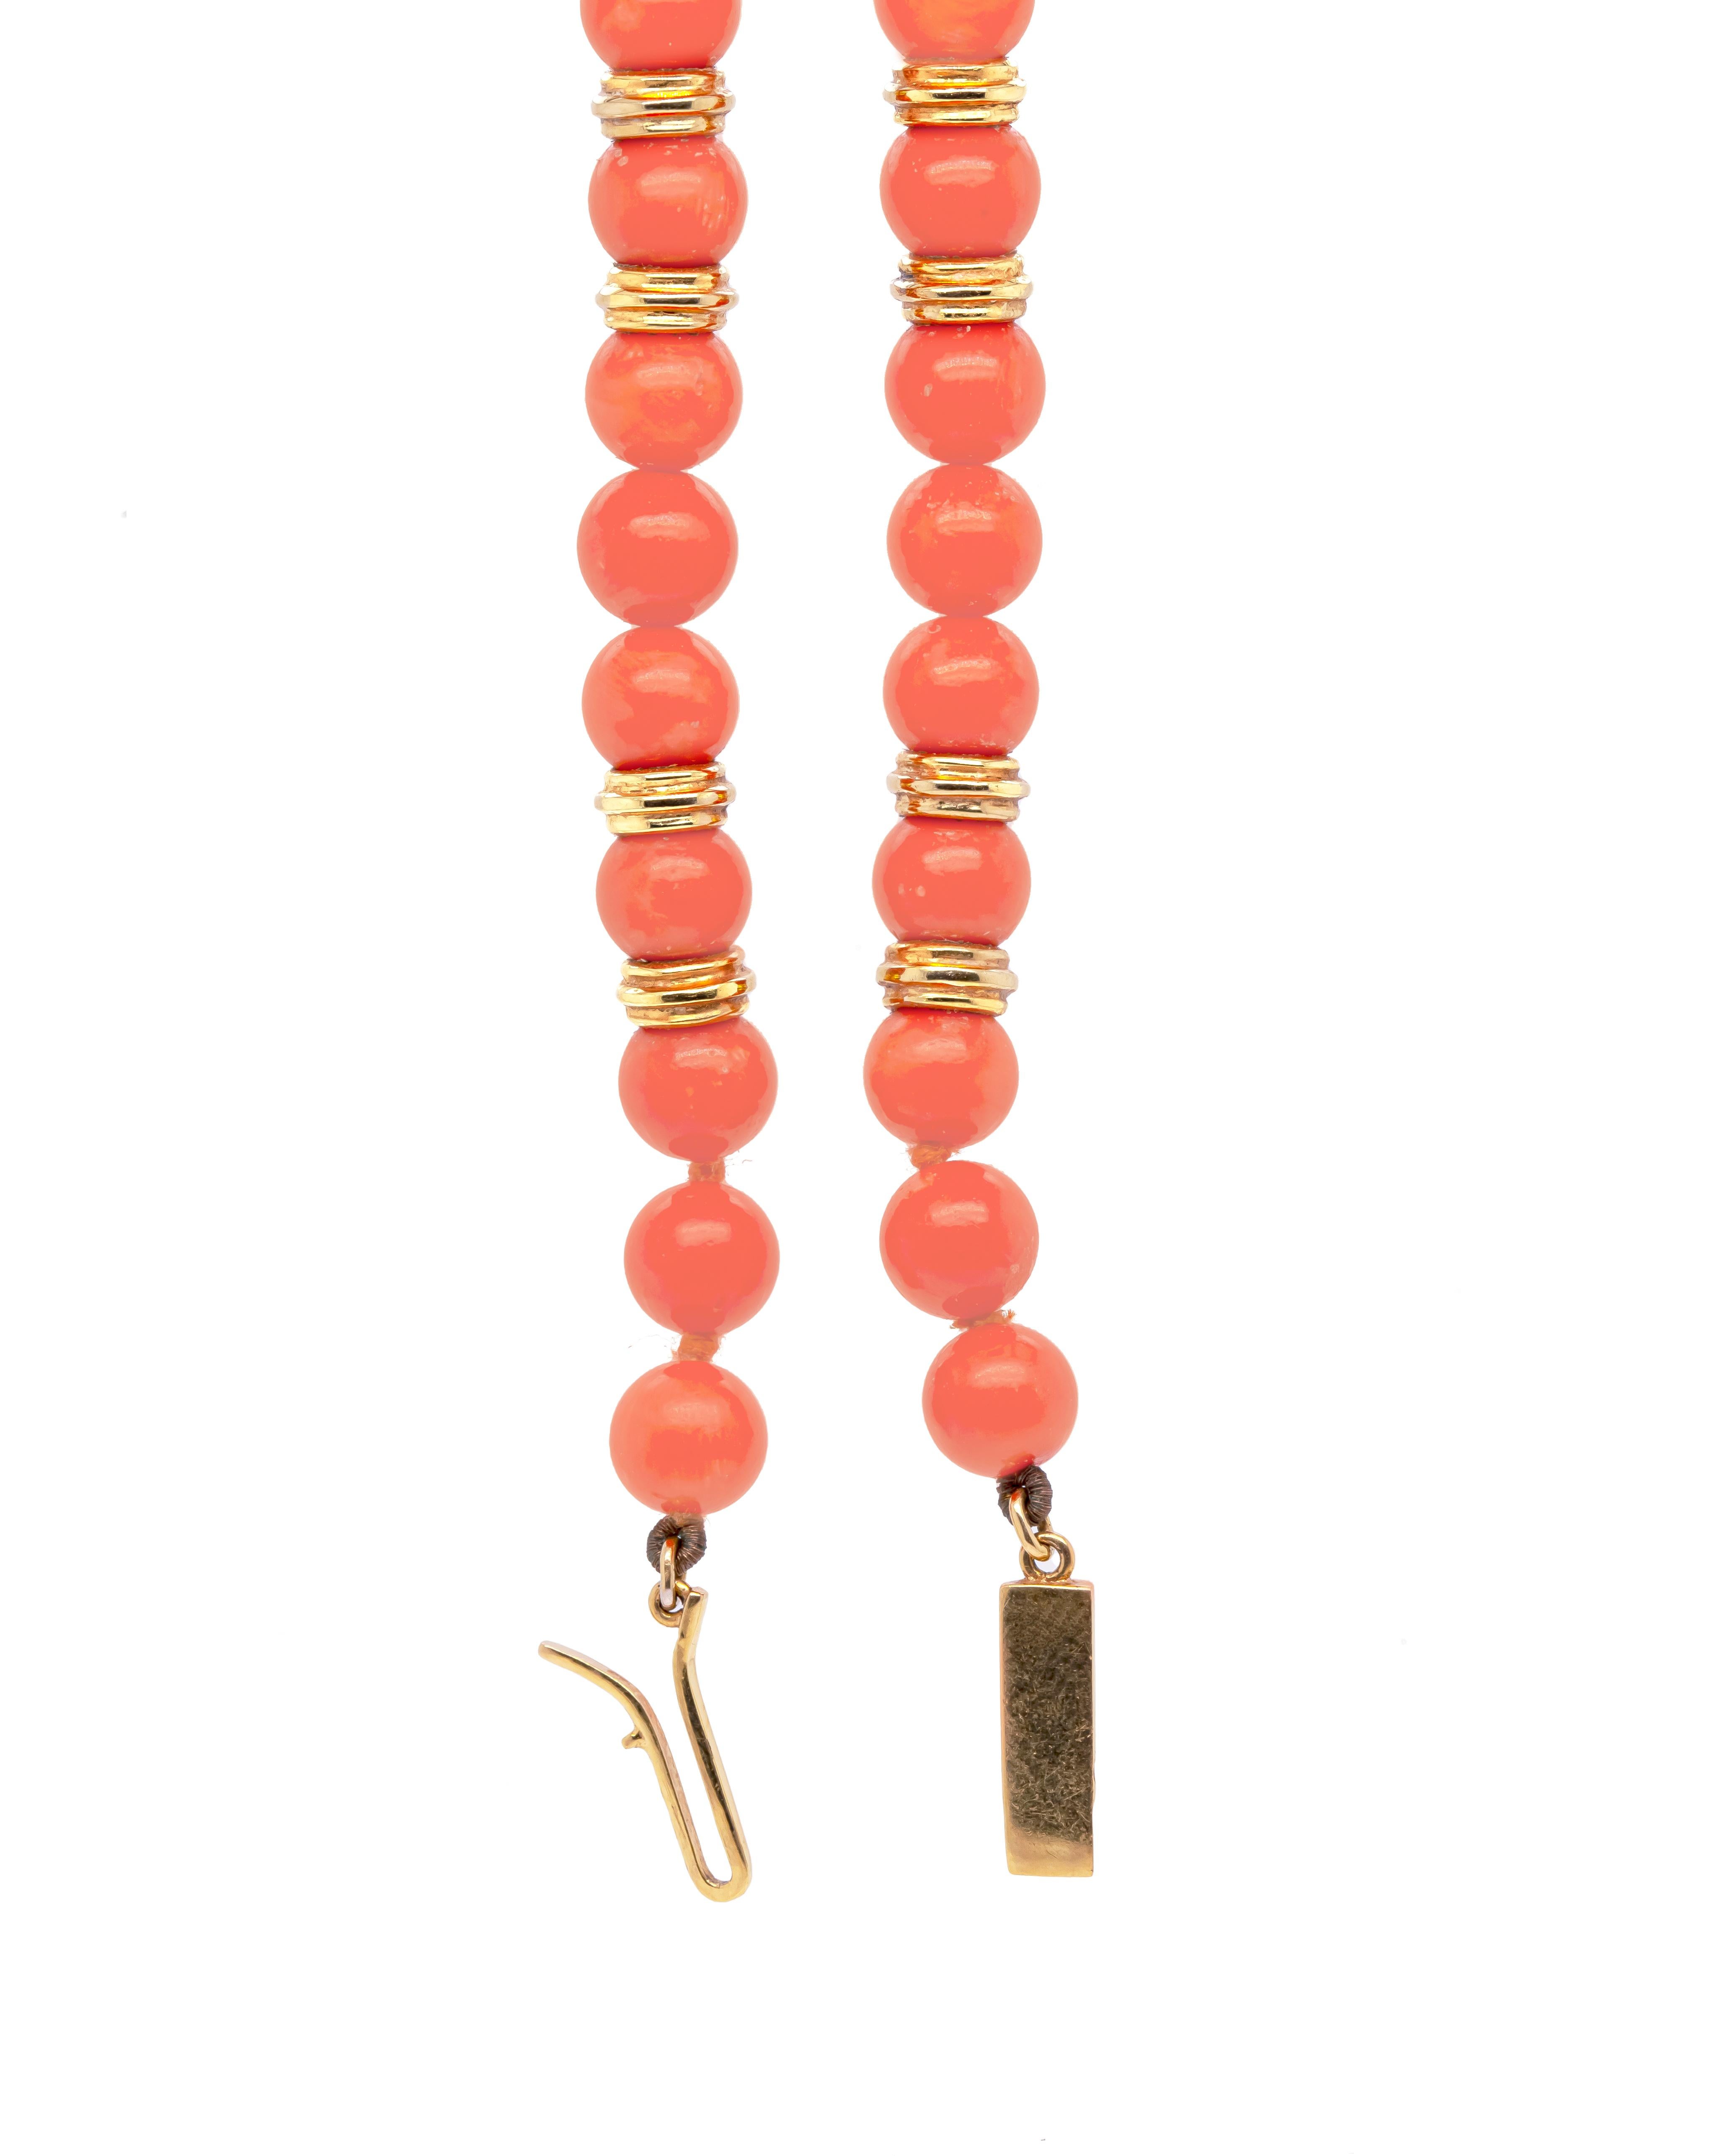 Diese sorgfältig gefertigte, klassische Halskette besteht aus einem einzigen Strang polierter Korallenperlen mit einem Durchmesser von etwa 7,2 mm. Die glatten Korallenperlen werden durch Rondelle aus 18 Karat Gelbgold hervorgehoben, die wunderschön